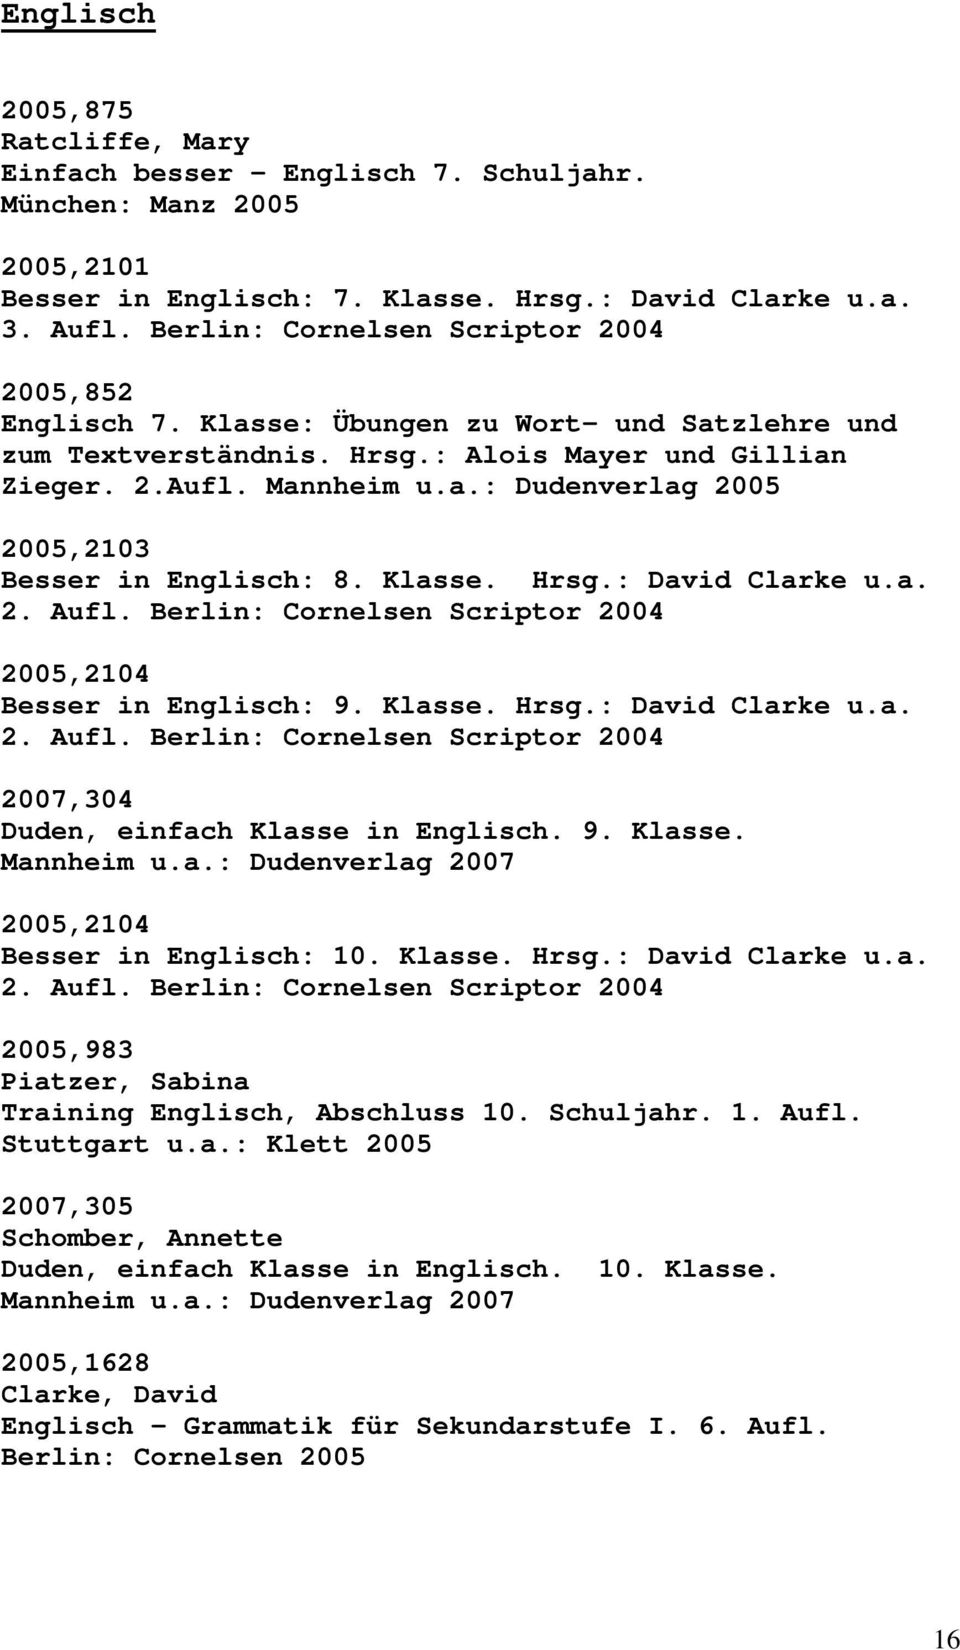 Klasse. Hrsg.: David Clarke u.a. 2. Aufl. Berlin: Cornelsen Scriptor 2004 2005,2104 Besser in Englisch: 9. Klasse. Hrsg.: David Clarke u.a. 2. Aufl. Berlin: Cornelsen Scriptor 2004 2007,304 Duden, einfach Klasse in Englisch.